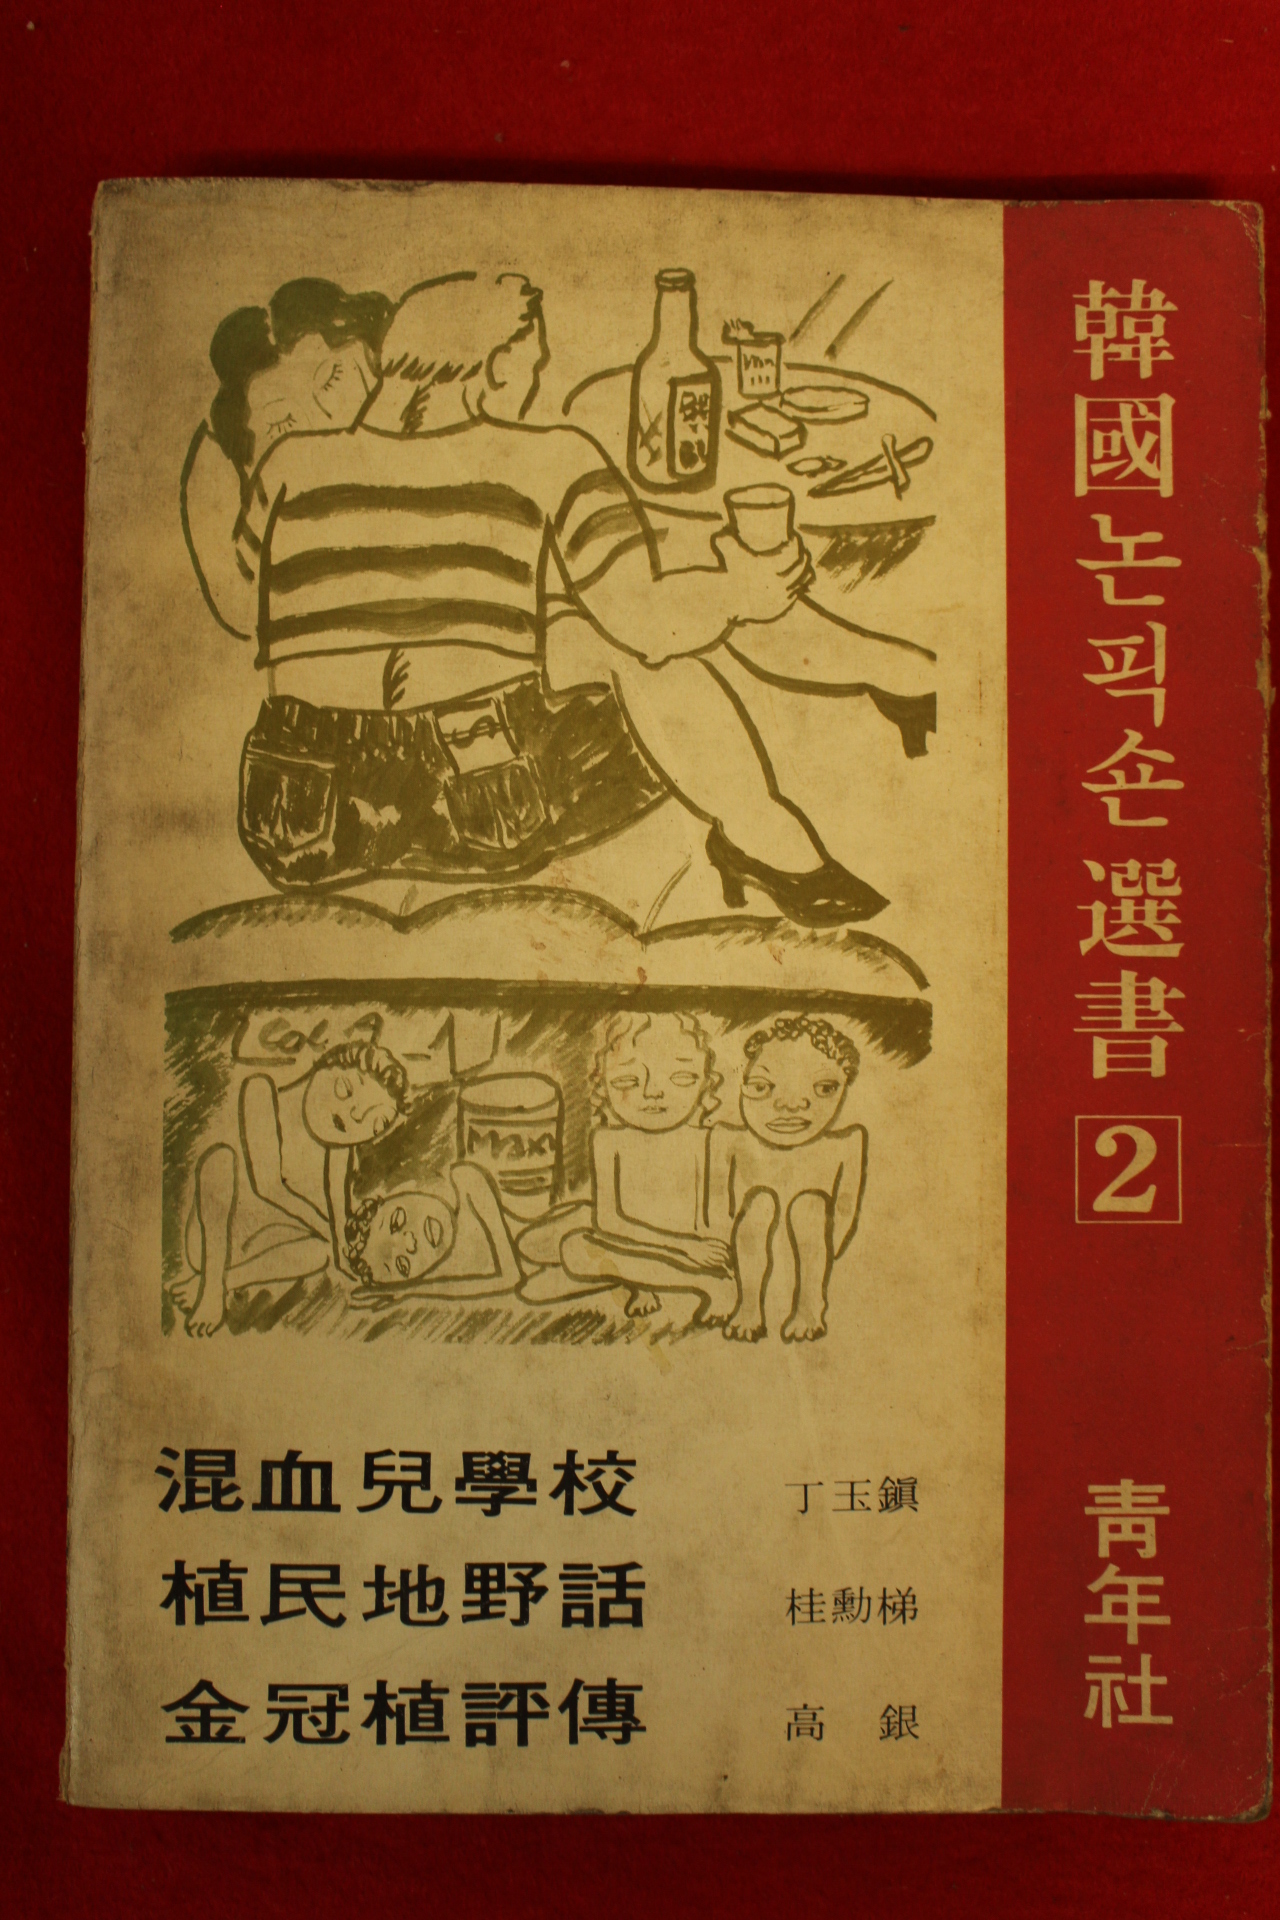 1976년초판 한국논픽션선서 2